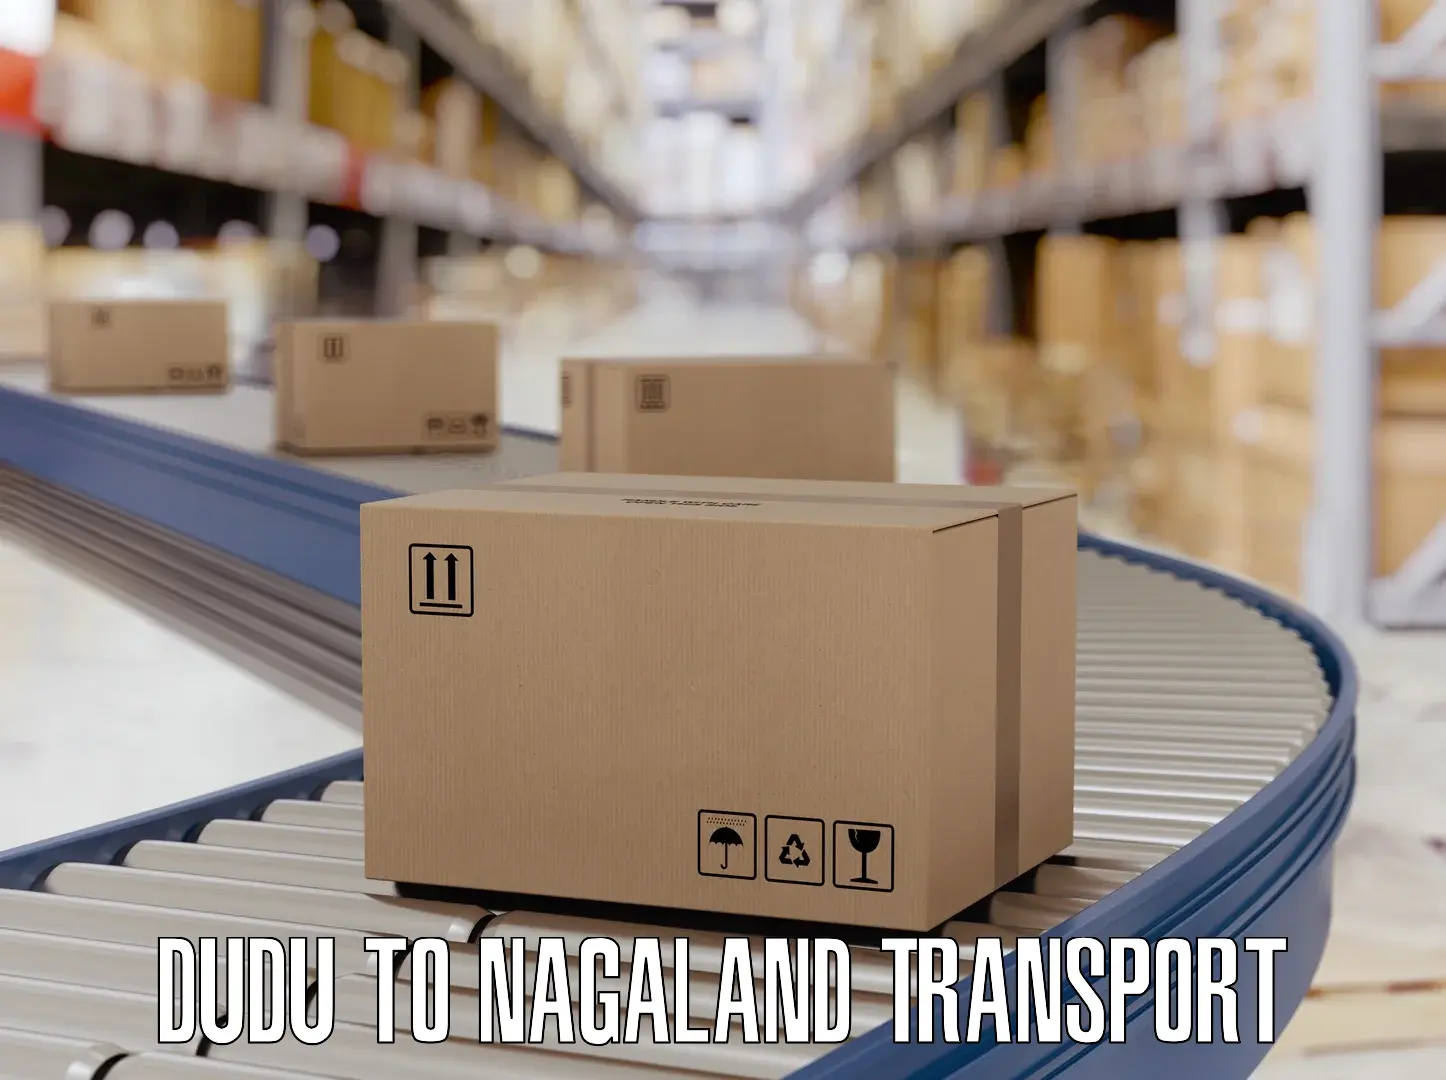 Online transport service Dudu to Nagaland